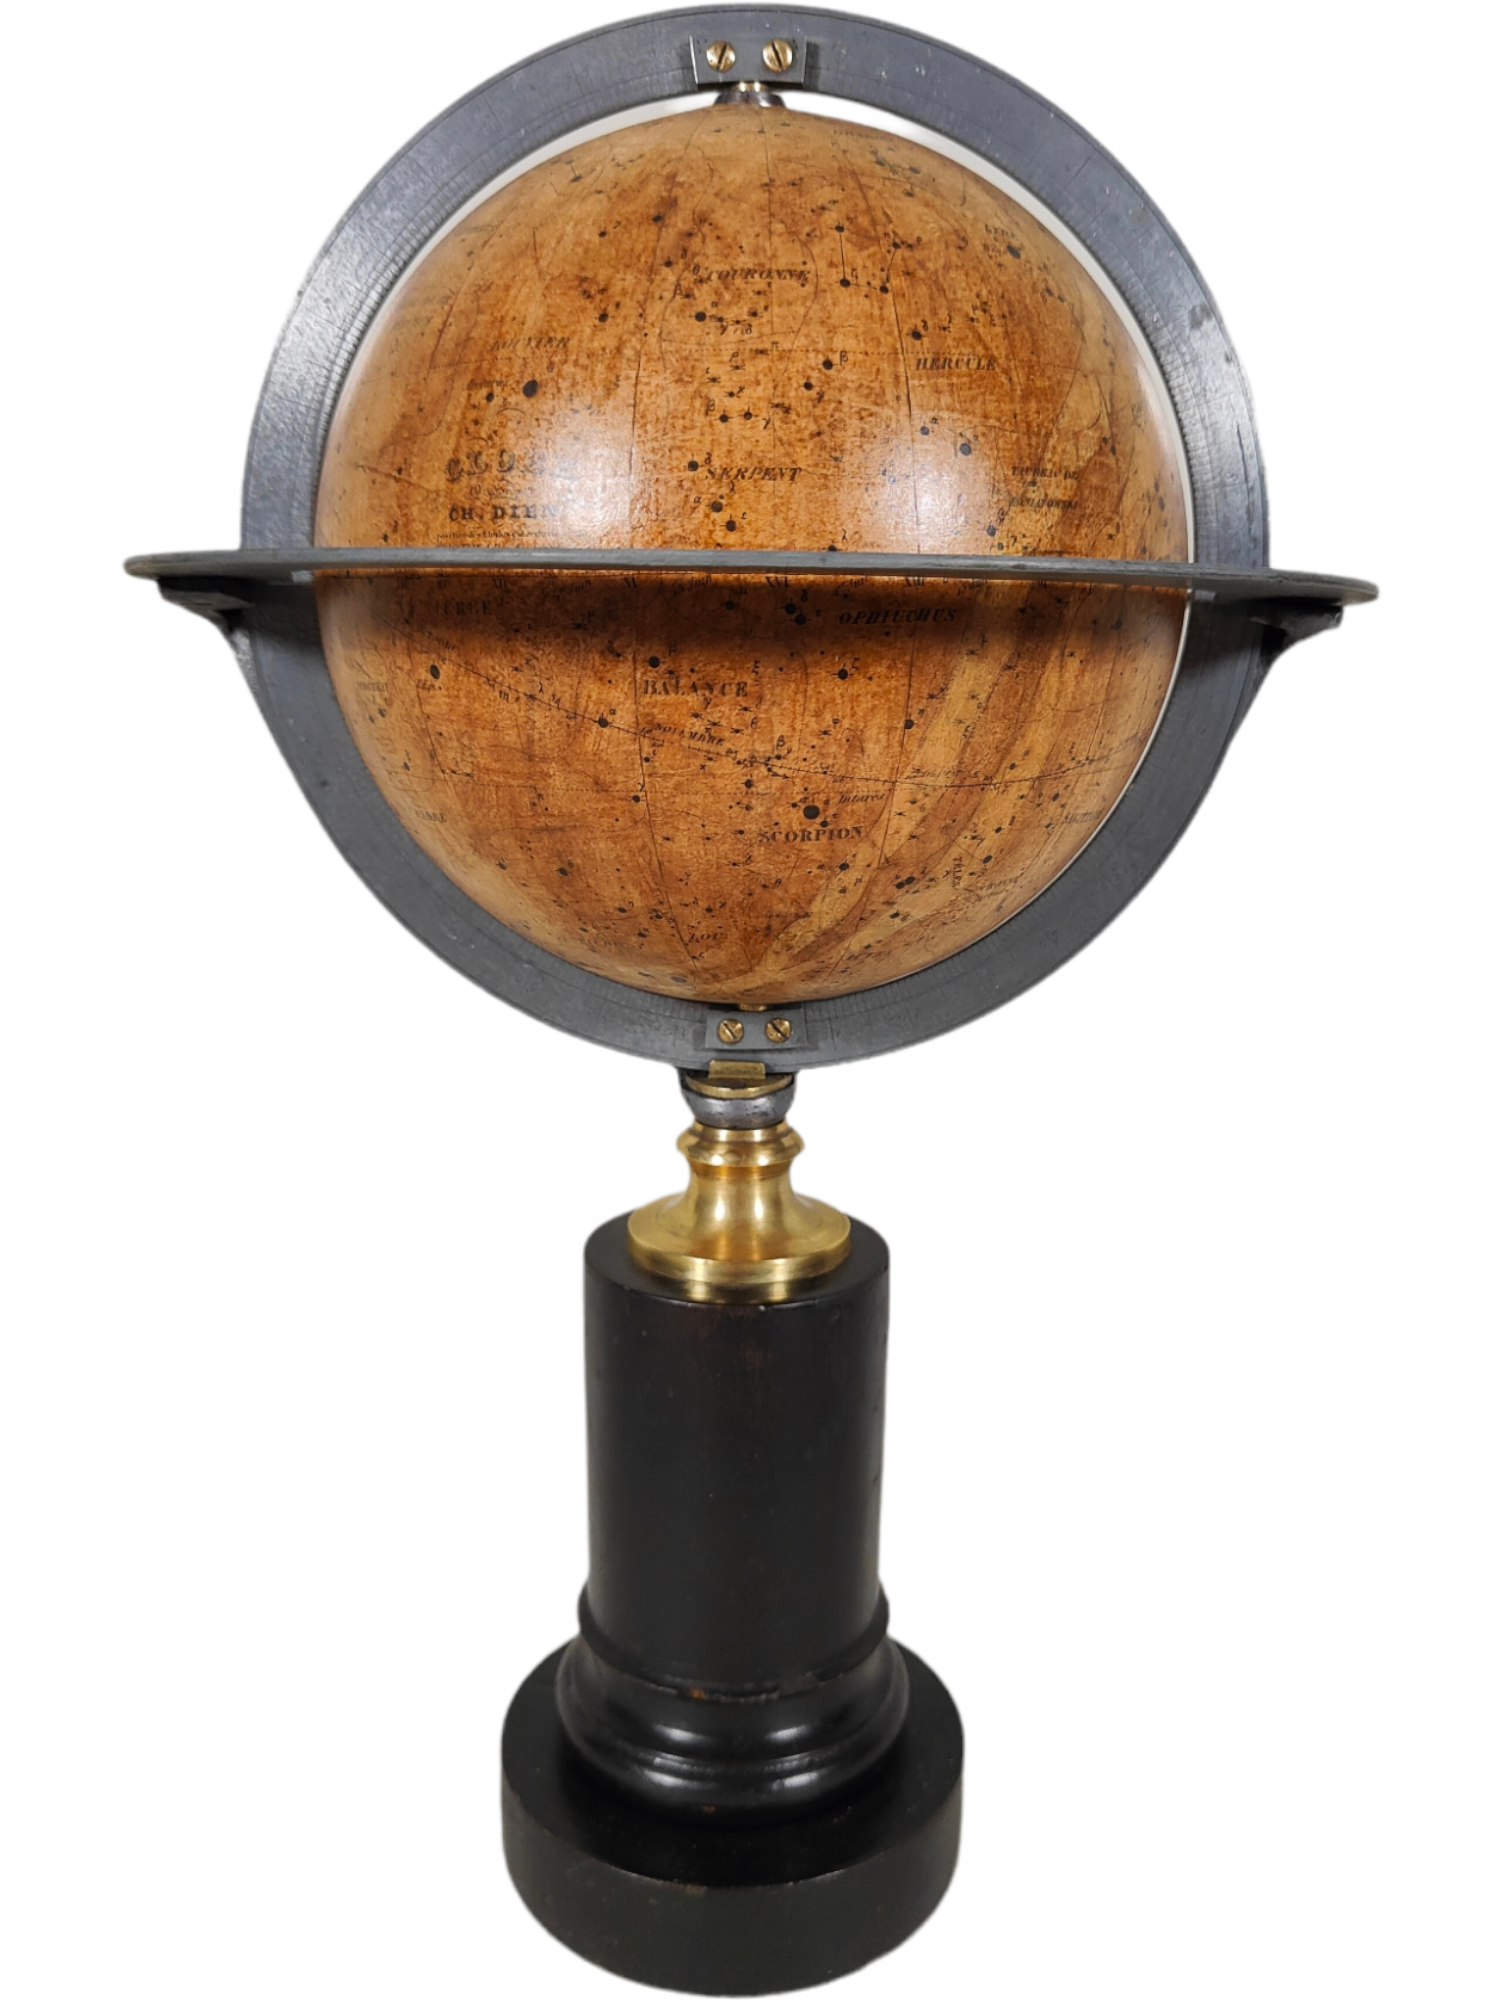 Celestial Globe By Charles Dien